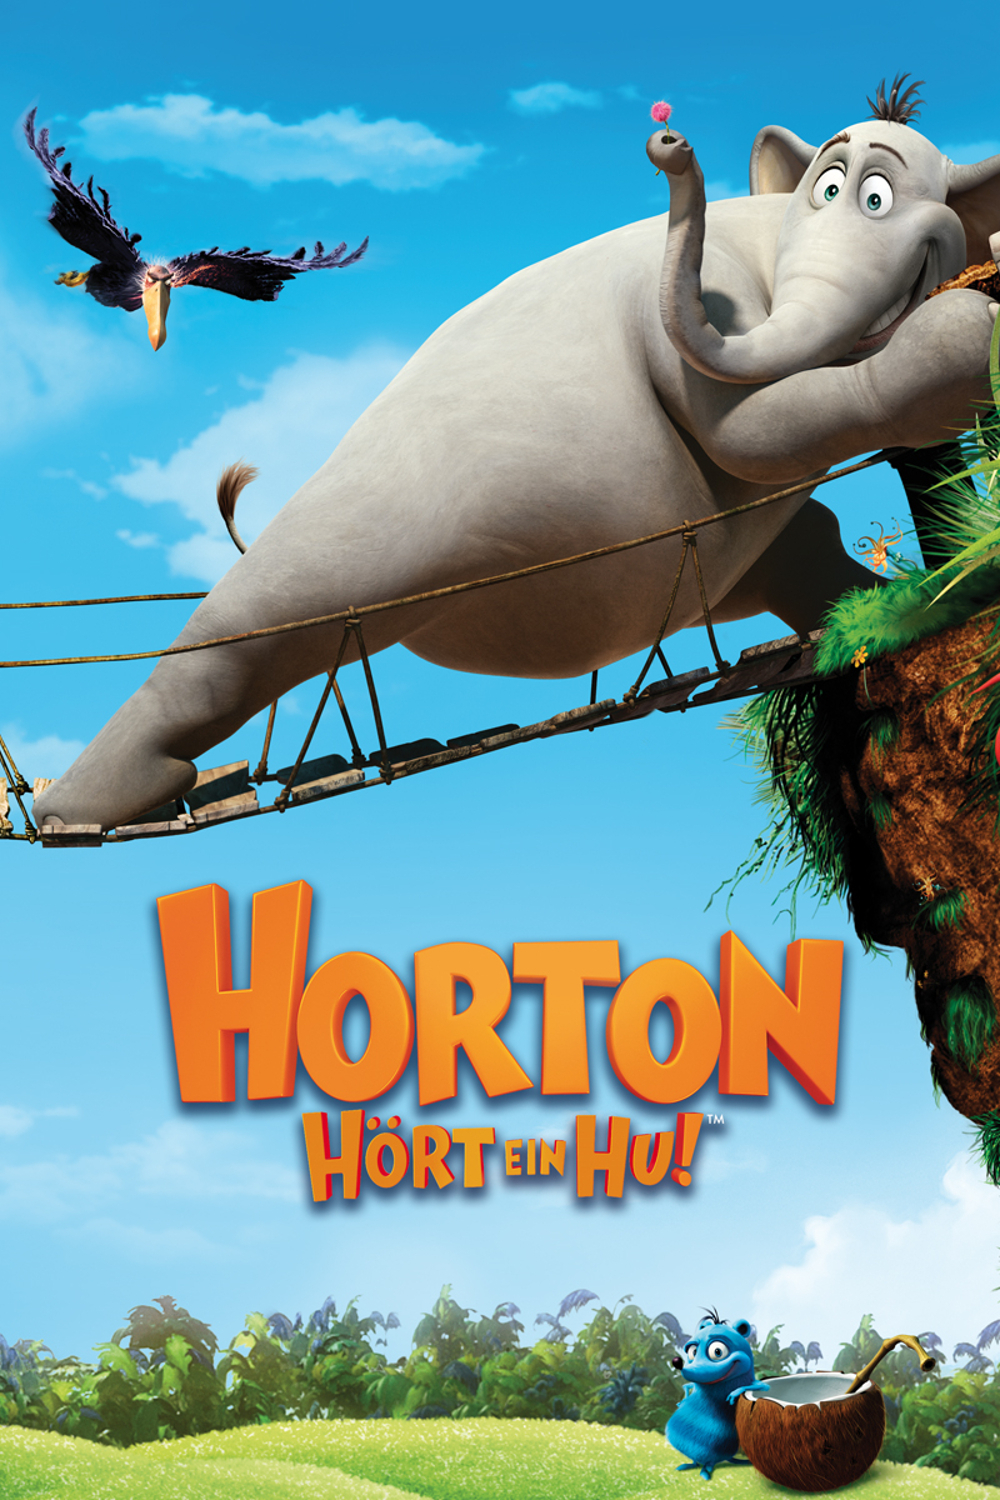 Plakat von "Horton hört ein Hu!"